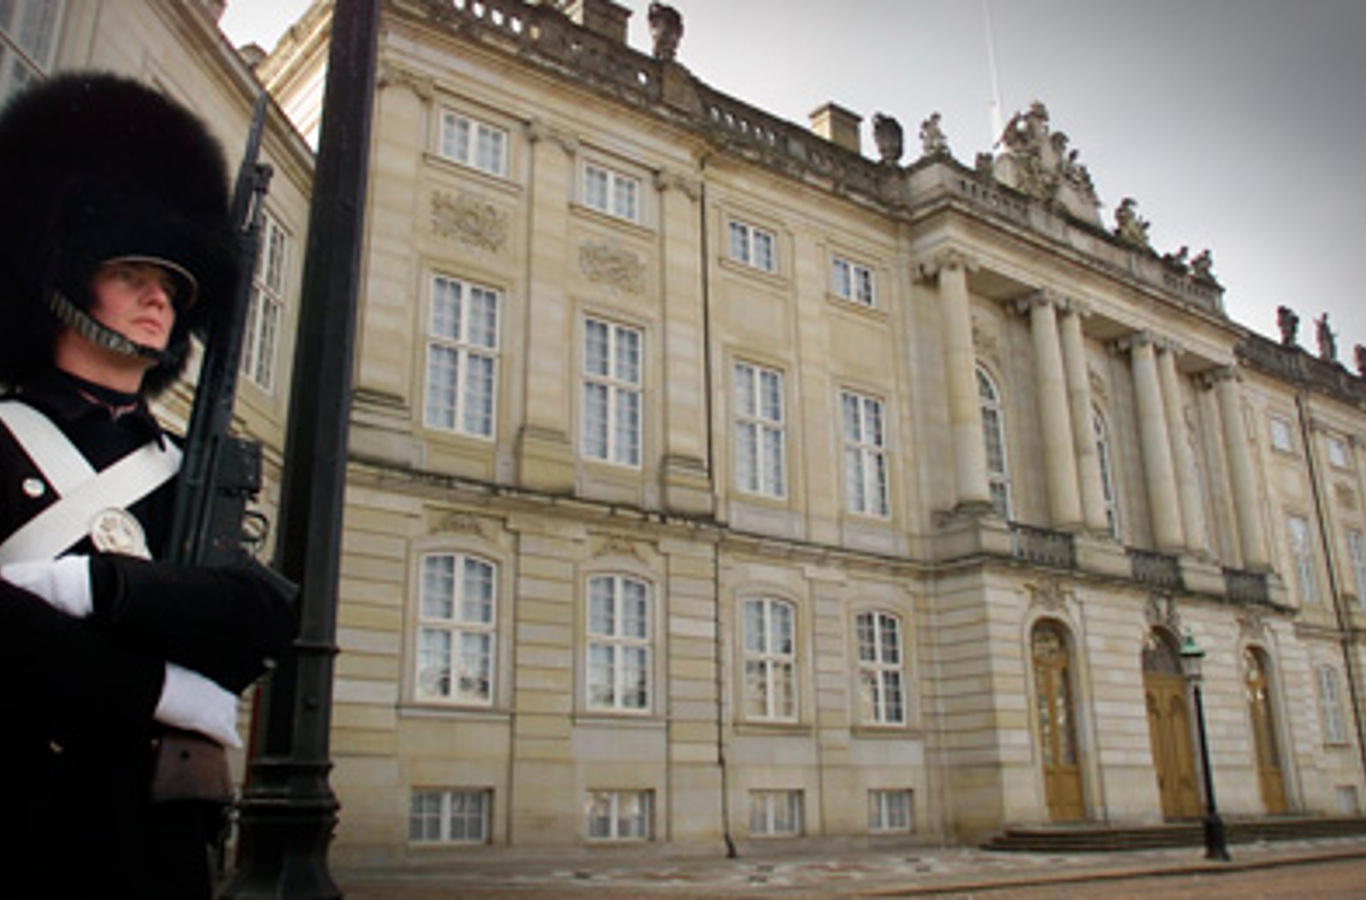 Hæderstegnsmiddagen afholdes i Christian VII's Palæ, Amalienborg.